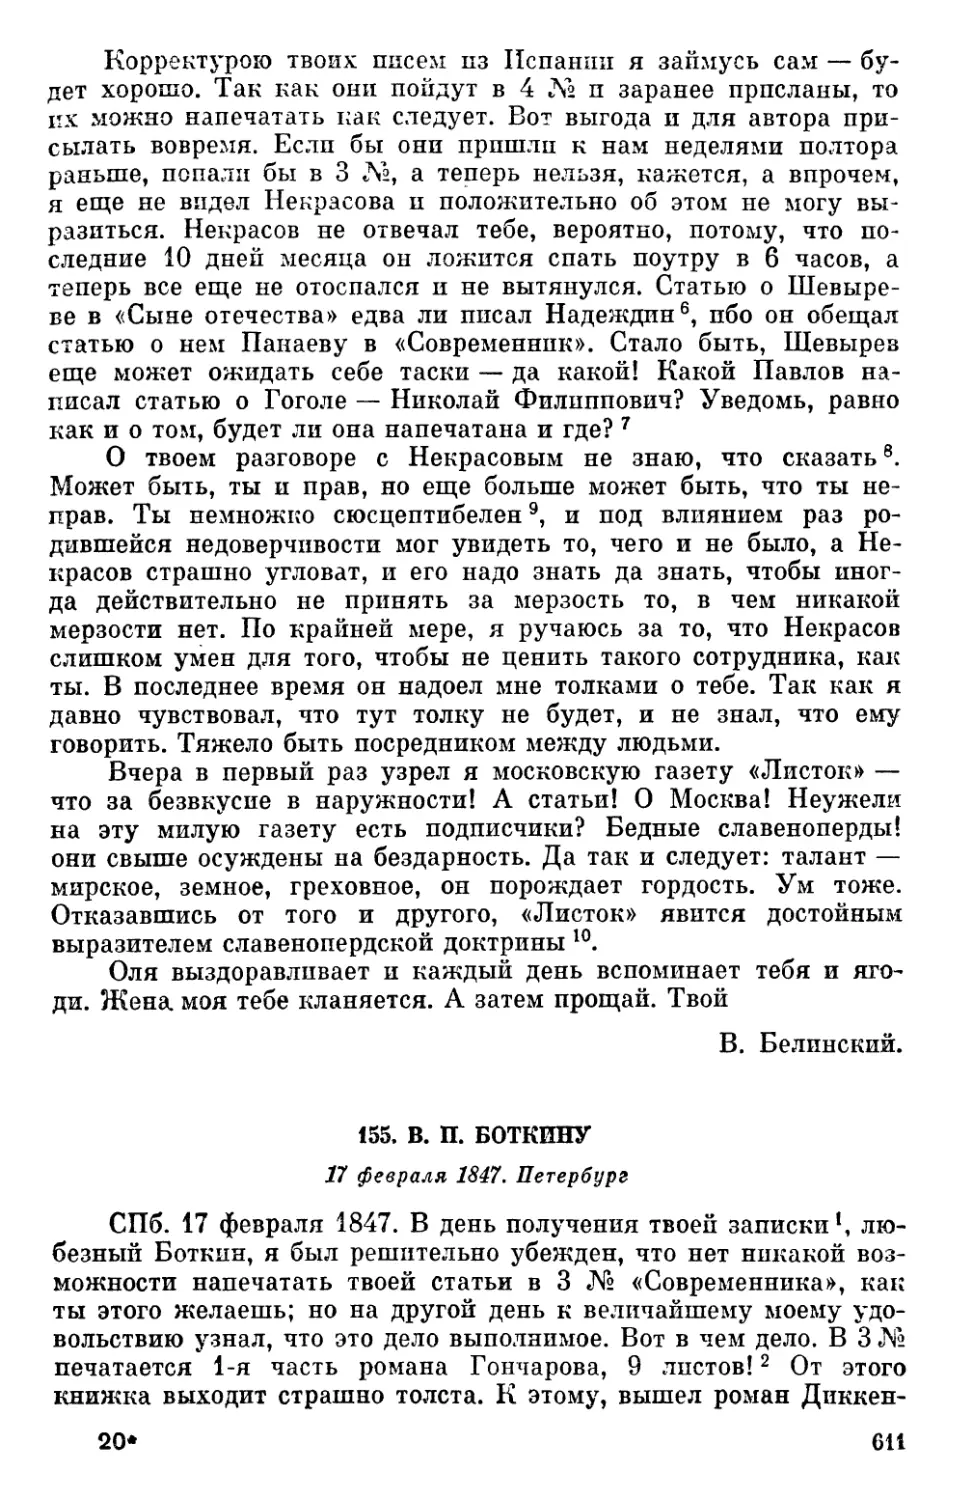 155. В. П. Боткину. 17 февраля 1847